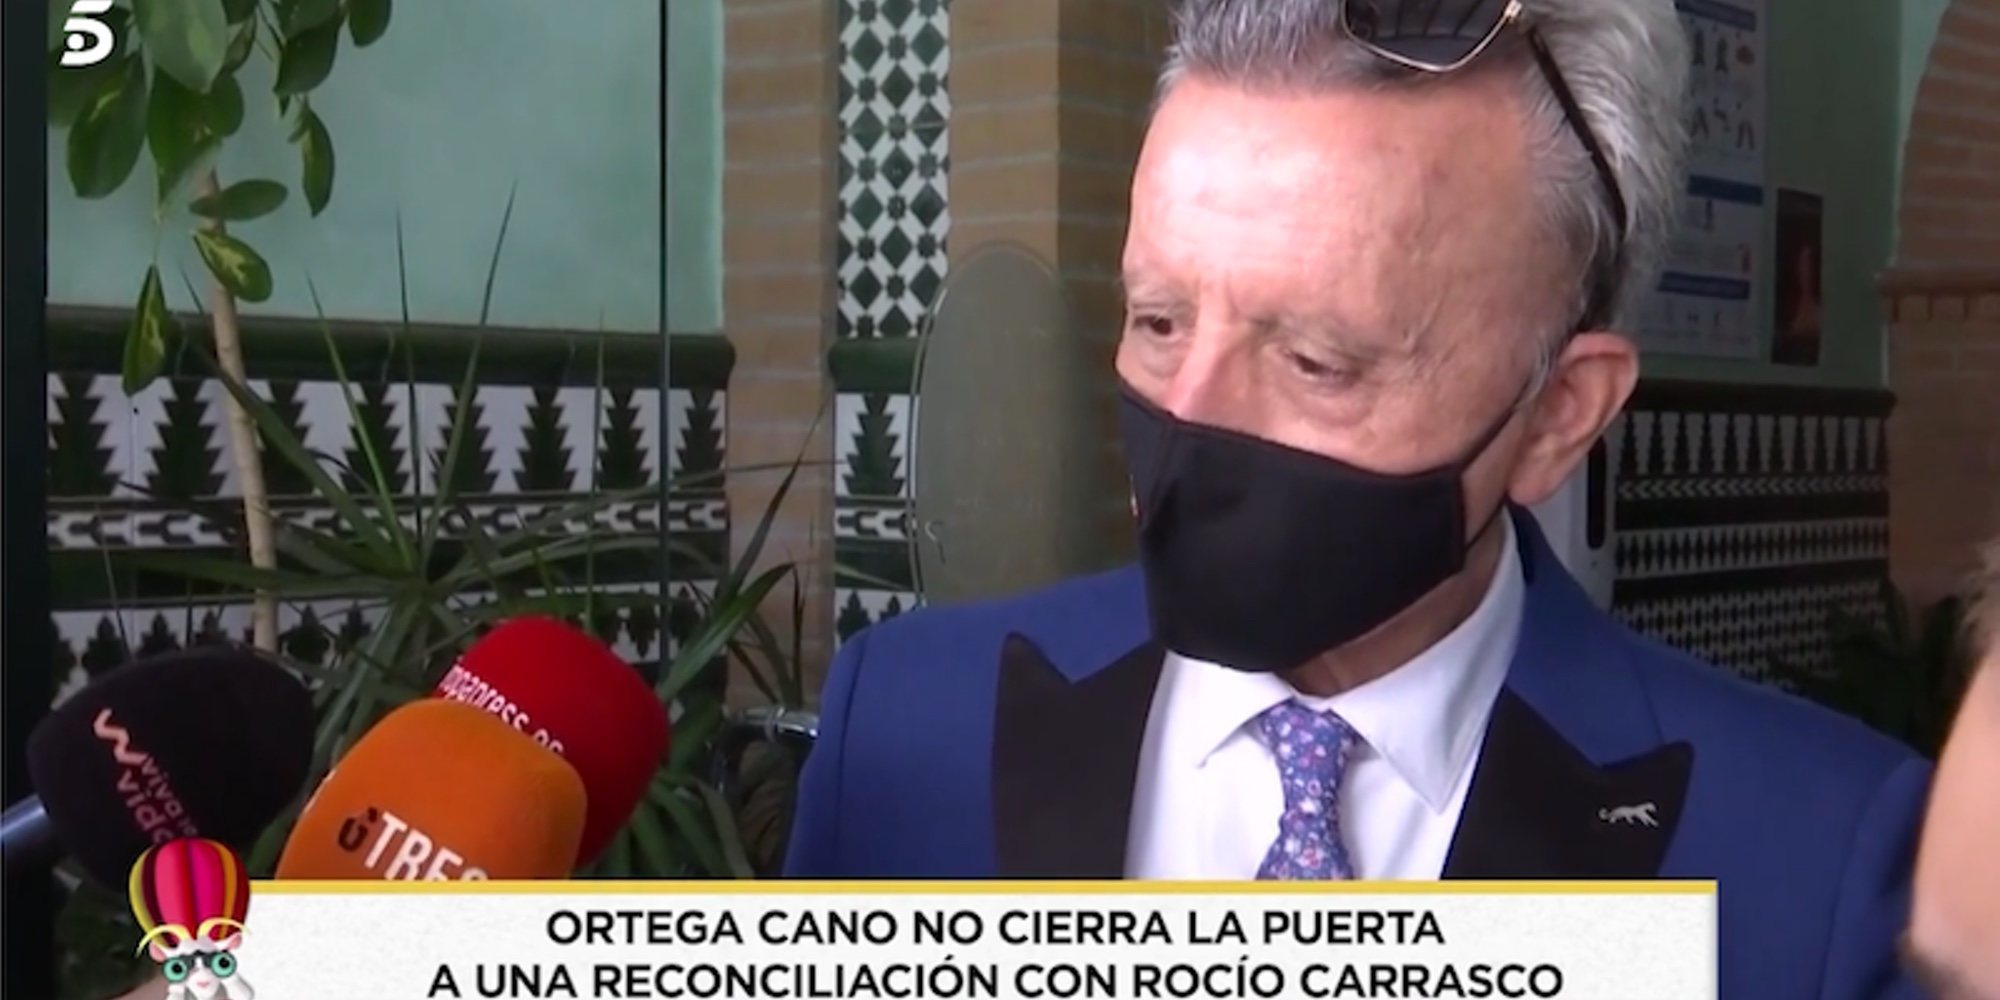 José Ortega Cano propicia un acercamiento con Rocío Carrasco: "La puerta nunca se cierra"